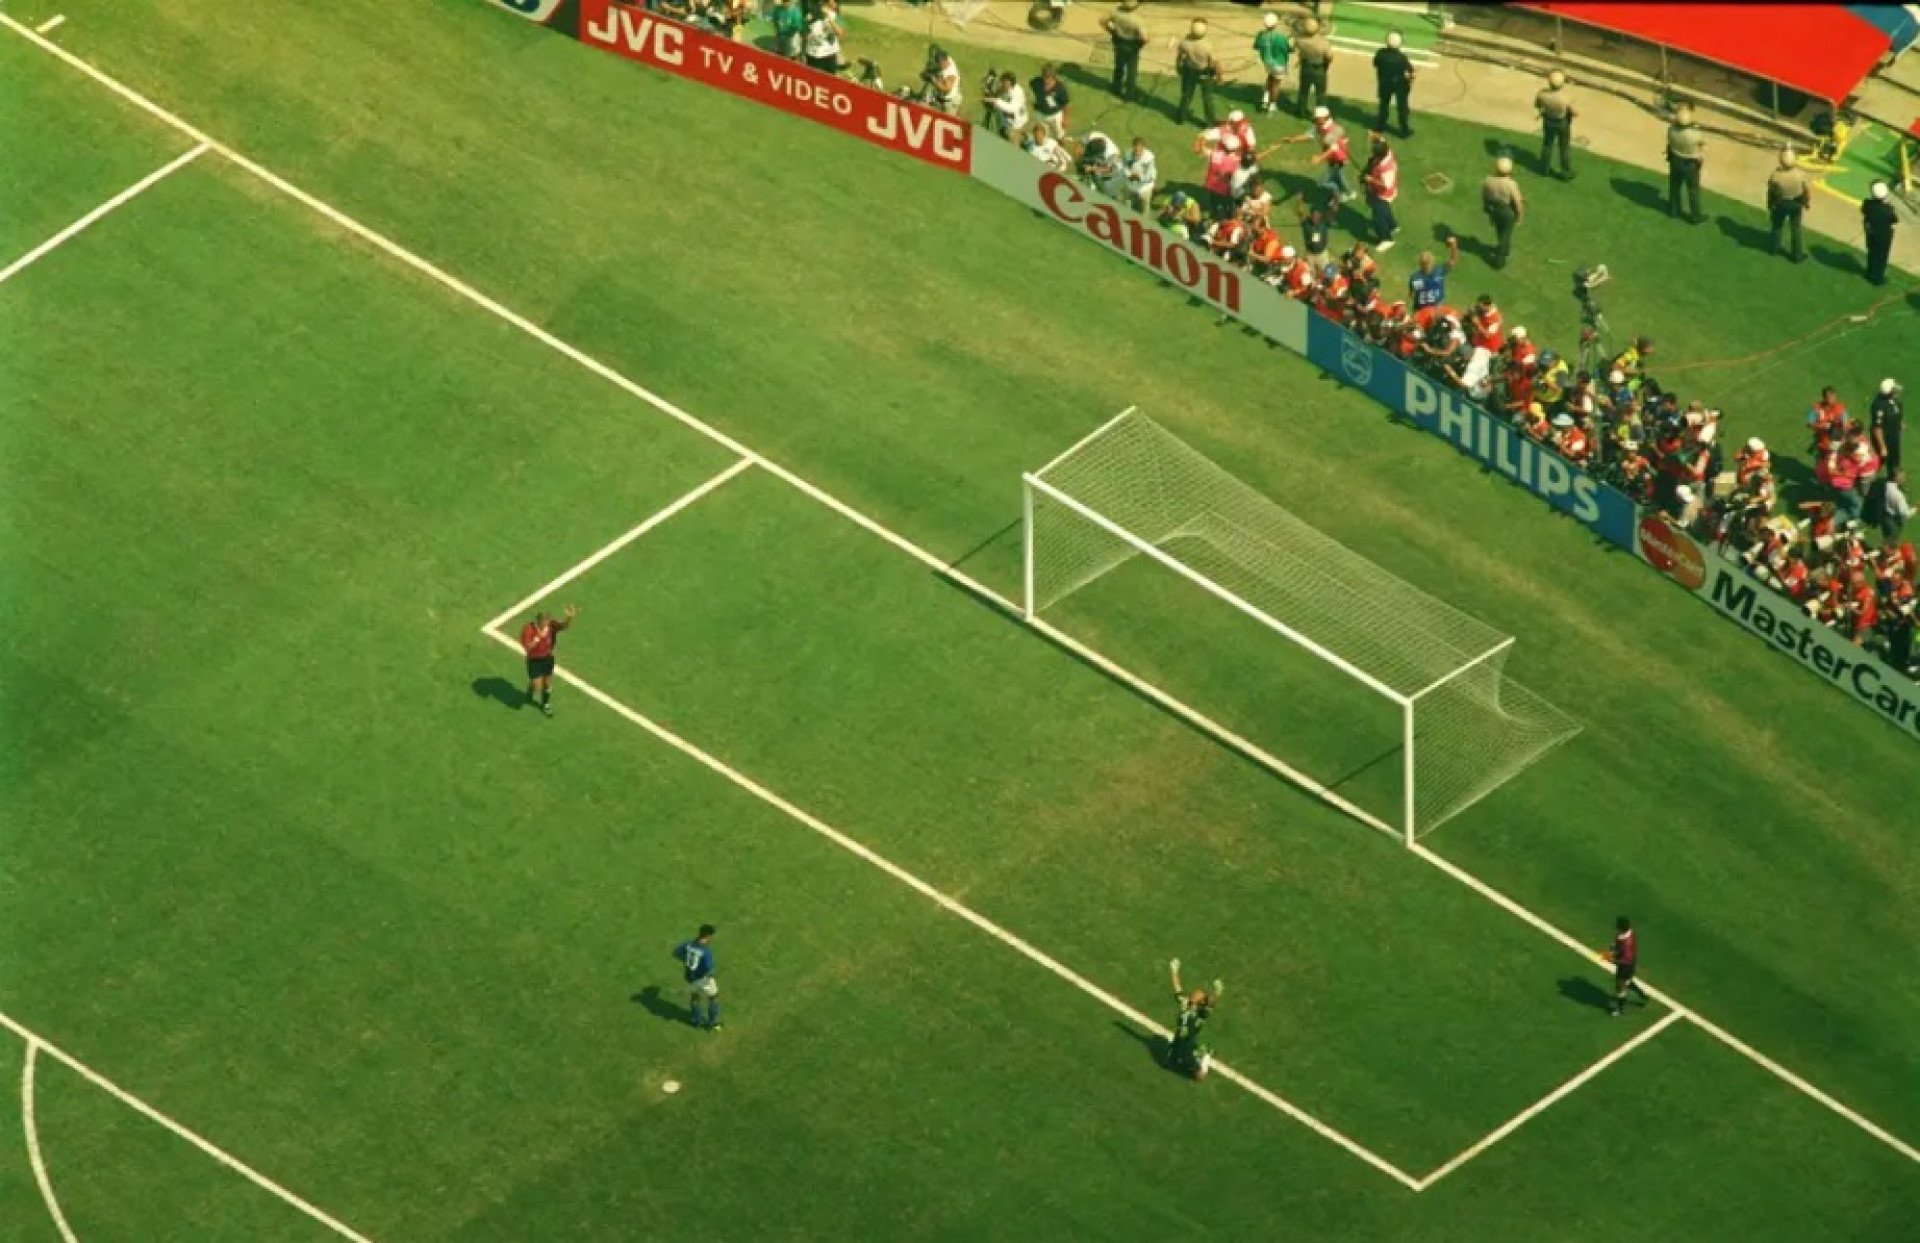 Taffarel e o Brasil explodiram de alegria após cobrança de Roberto Baggio - Divulgação/Fifa